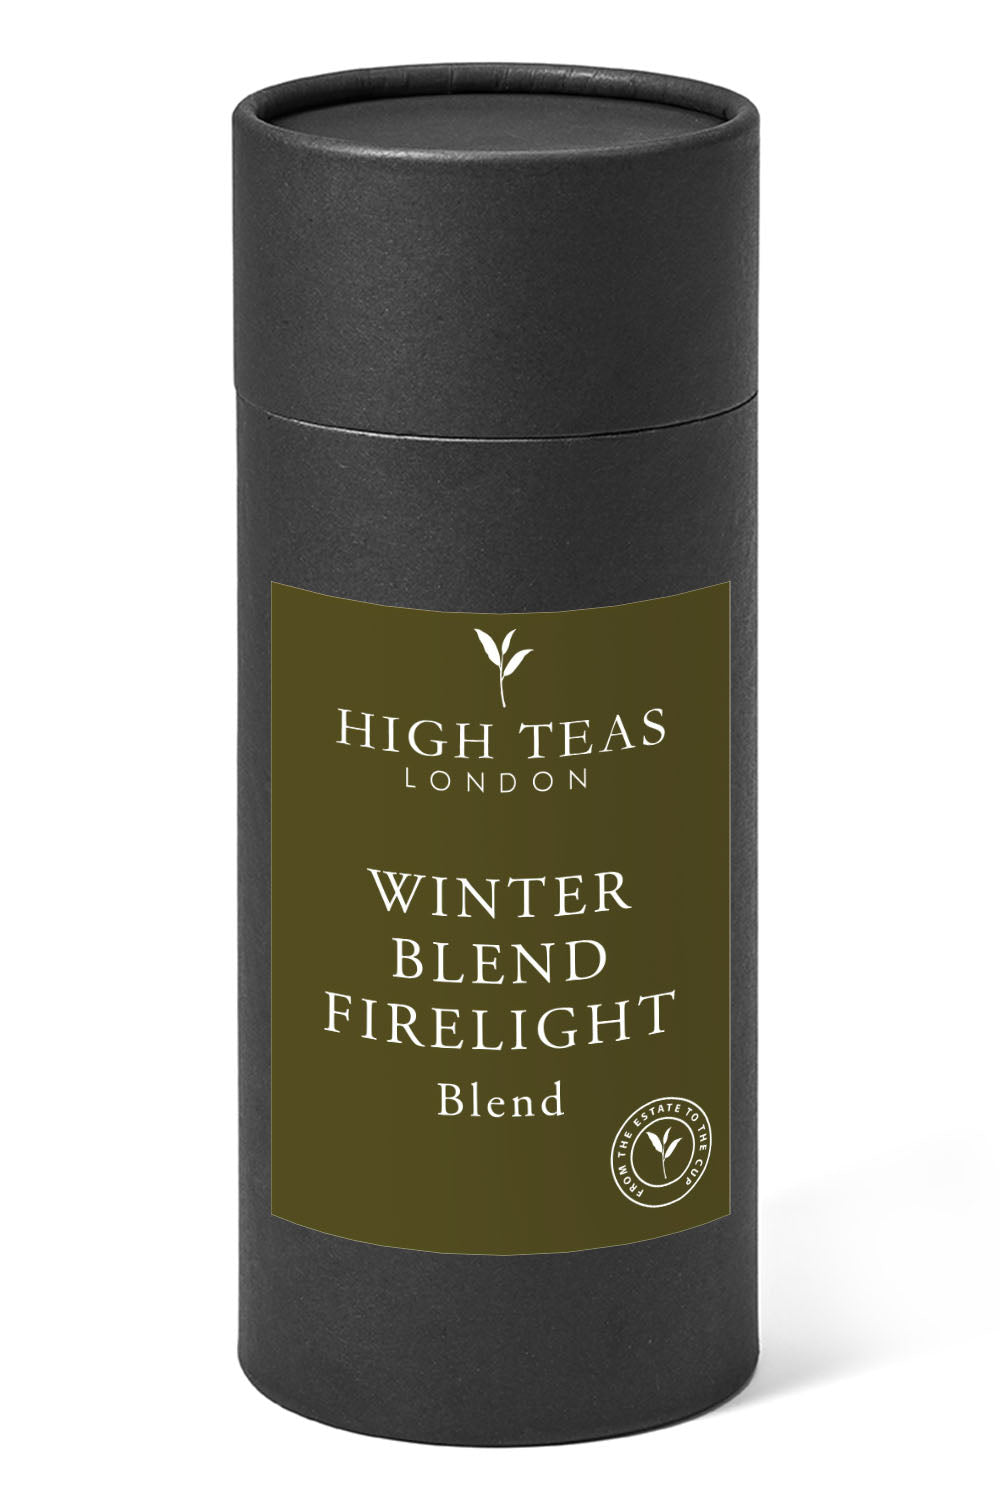 Winter Blend Firelight-150g gift-Loose Leaf Tea-High Teas